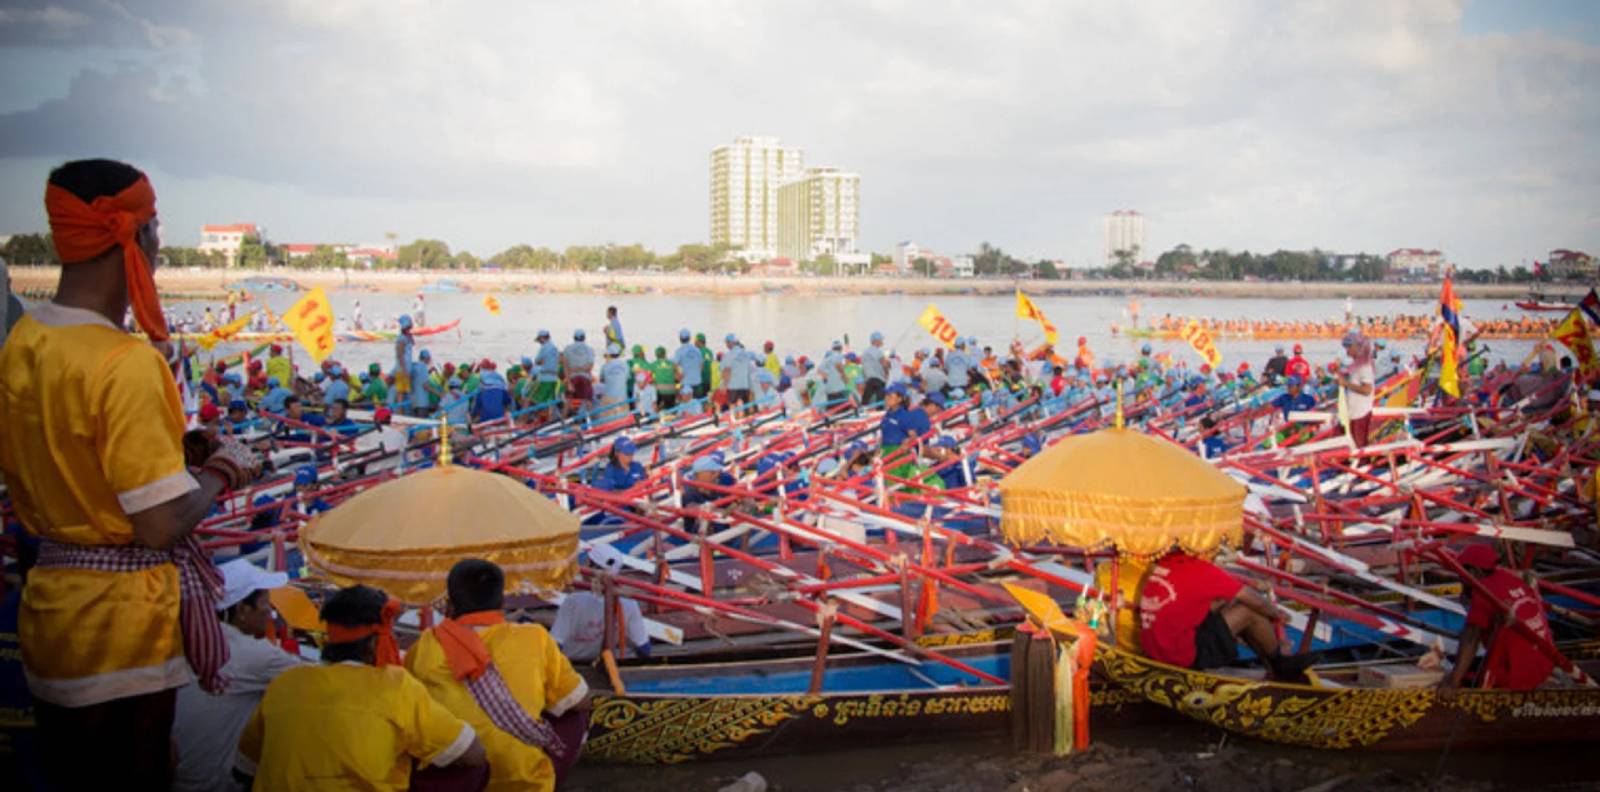 Cambodia Festivals in November